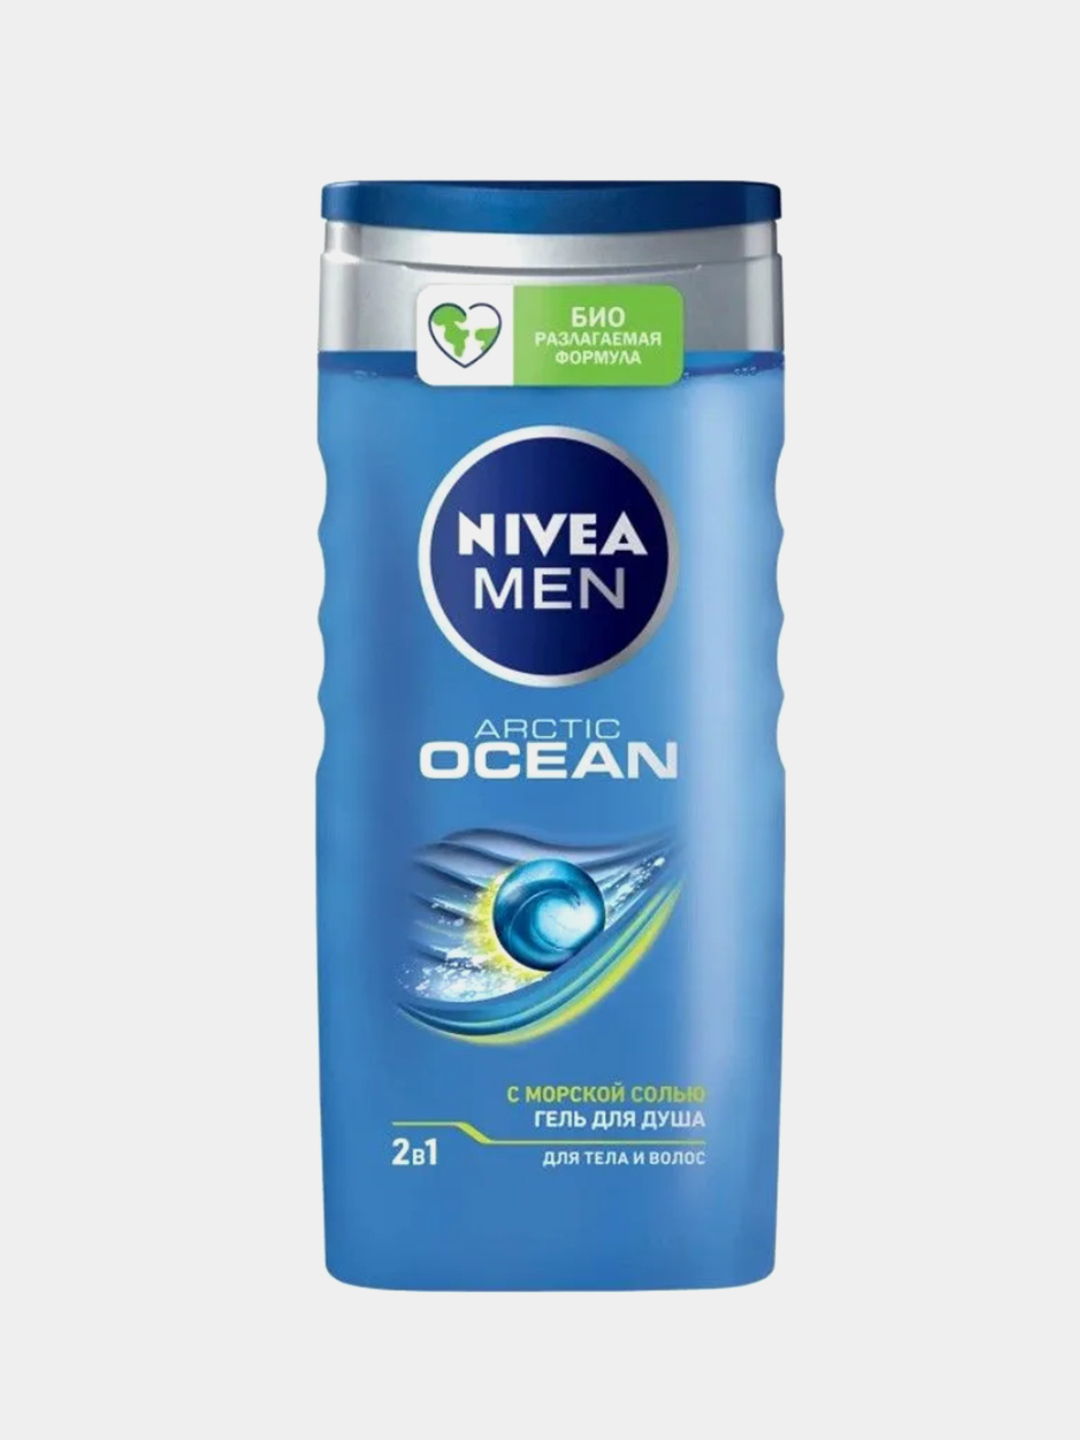 Гель для душа 0. Nivea гель для душа для мужчин «Ocean 2в1» 250 мл. Nivea men гель/душа 250 2в1 Arctic Ocean. Гель для душа шампунь нивея 250мл. Nivea men Arctic Ocean гель для душа.